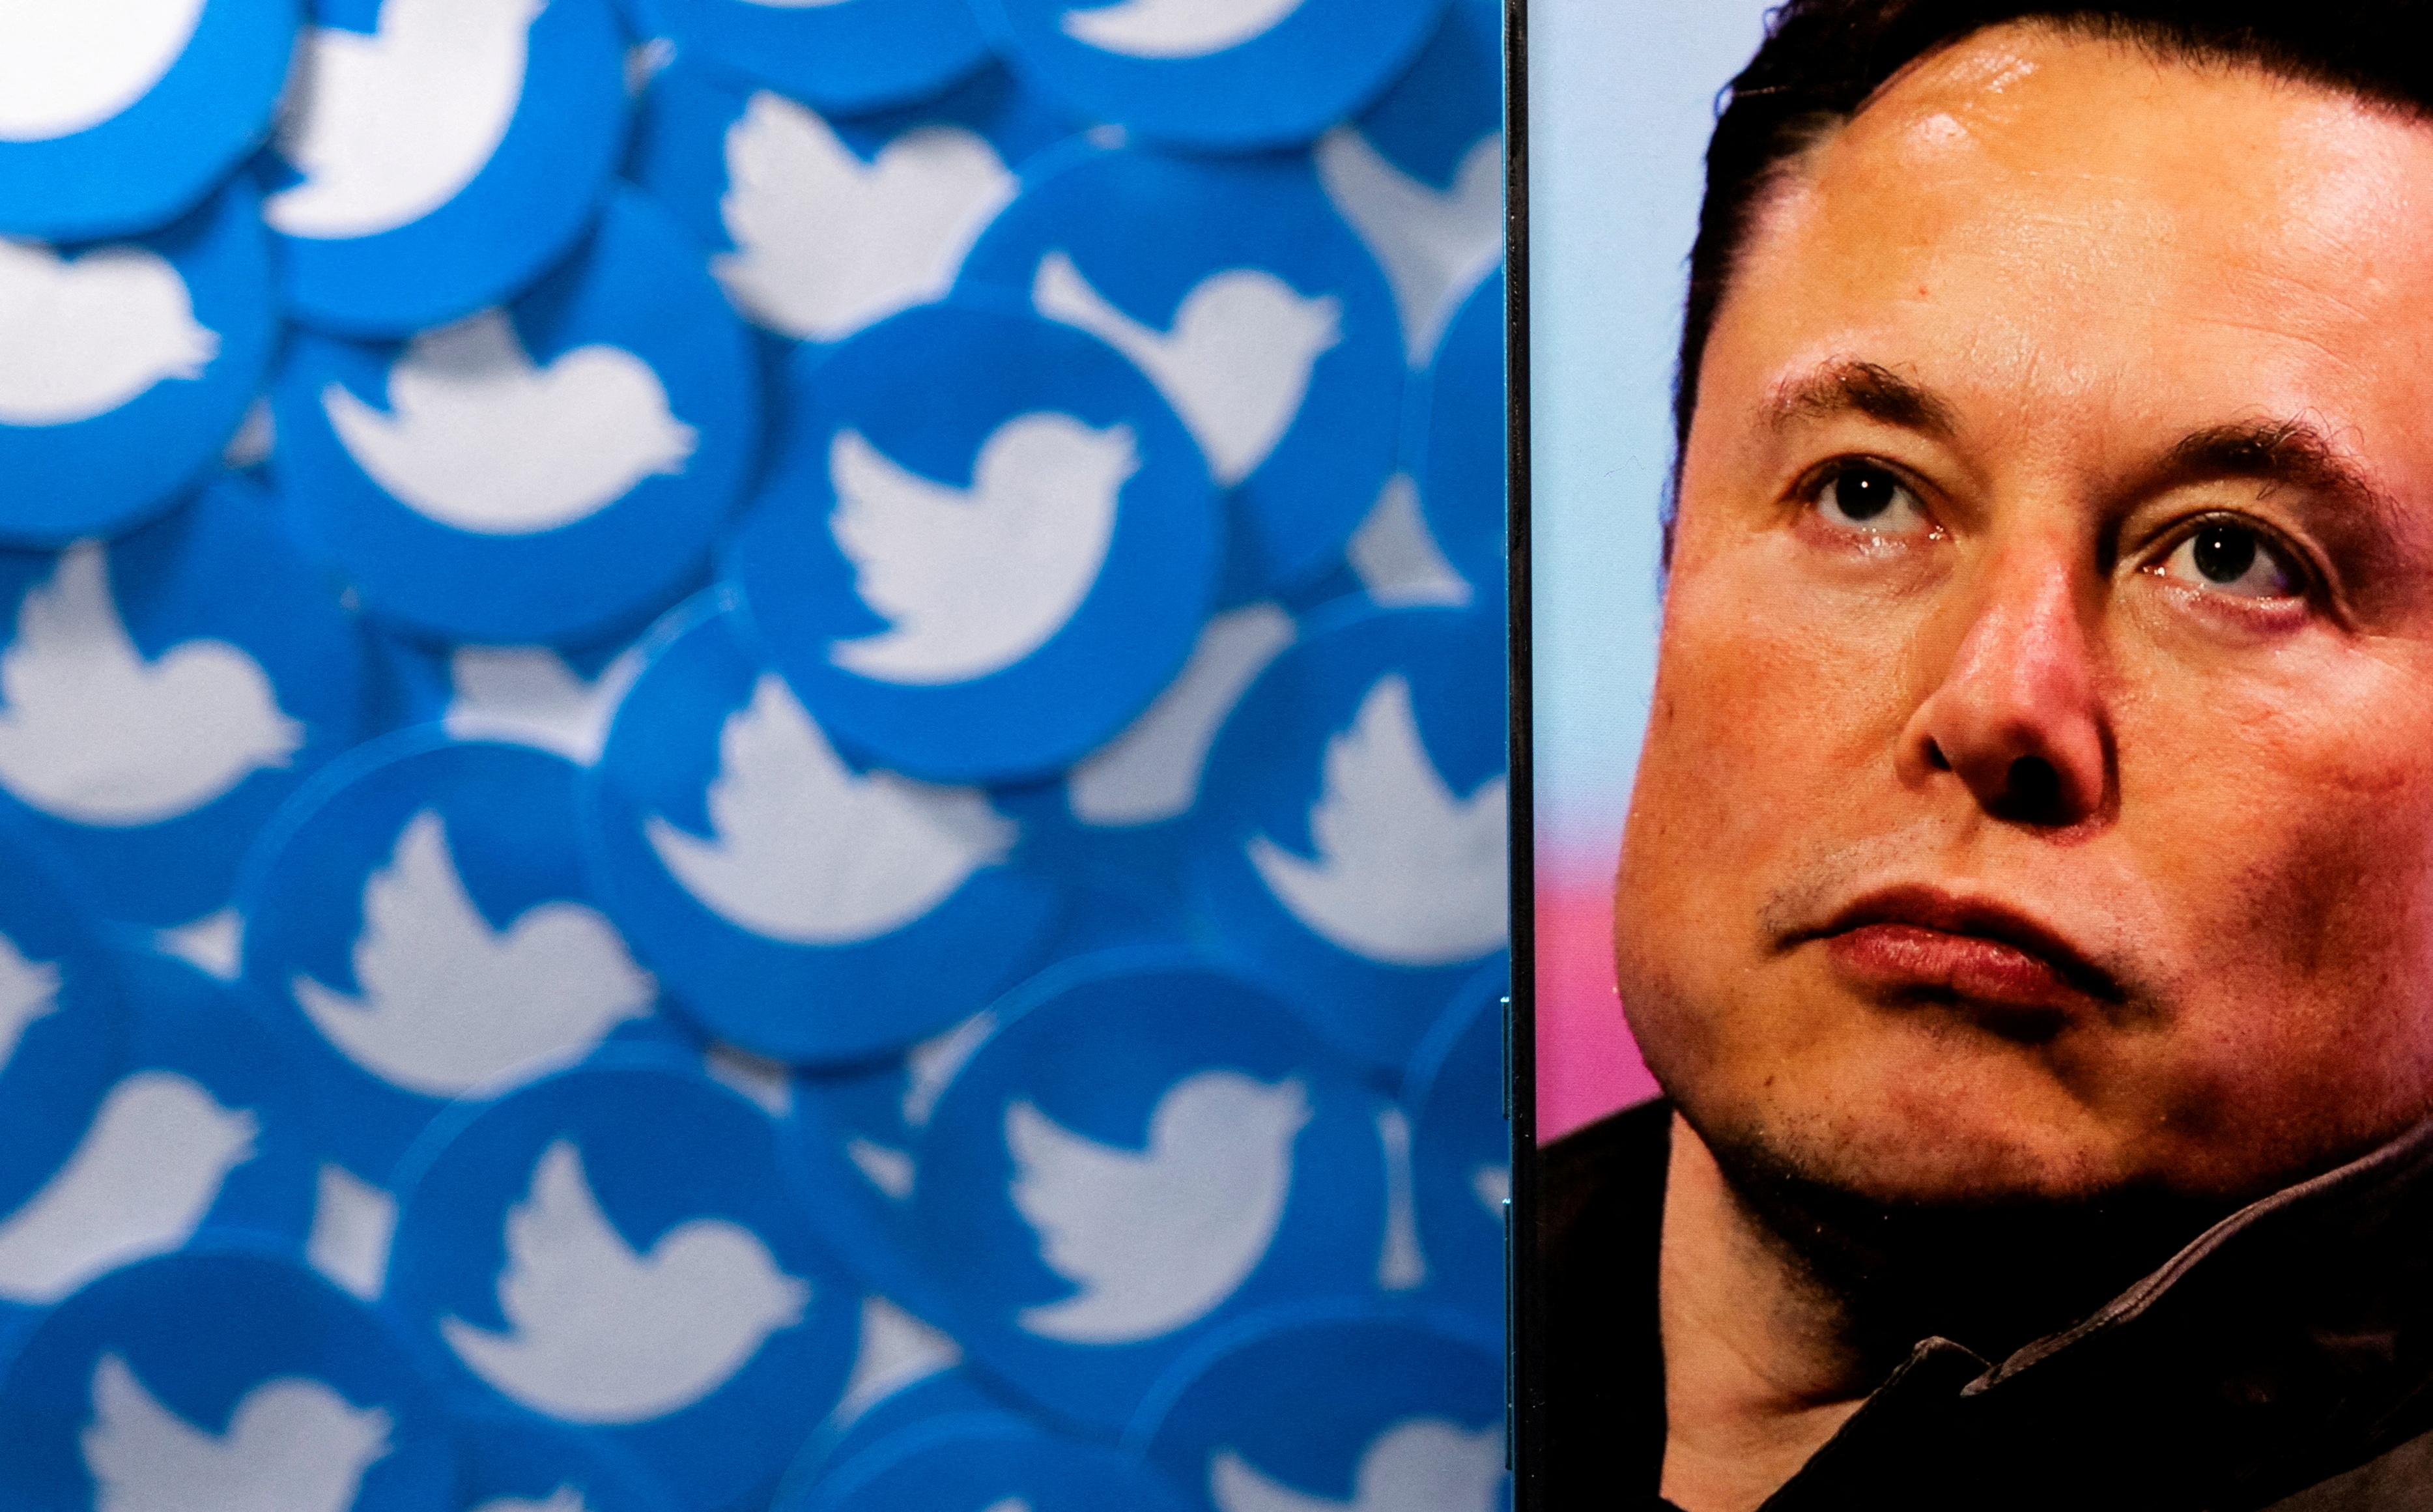 Rachat de Twitter : les tentatives d'Elon Musk pour faire baisser le prix pourraient se retourner contre lui